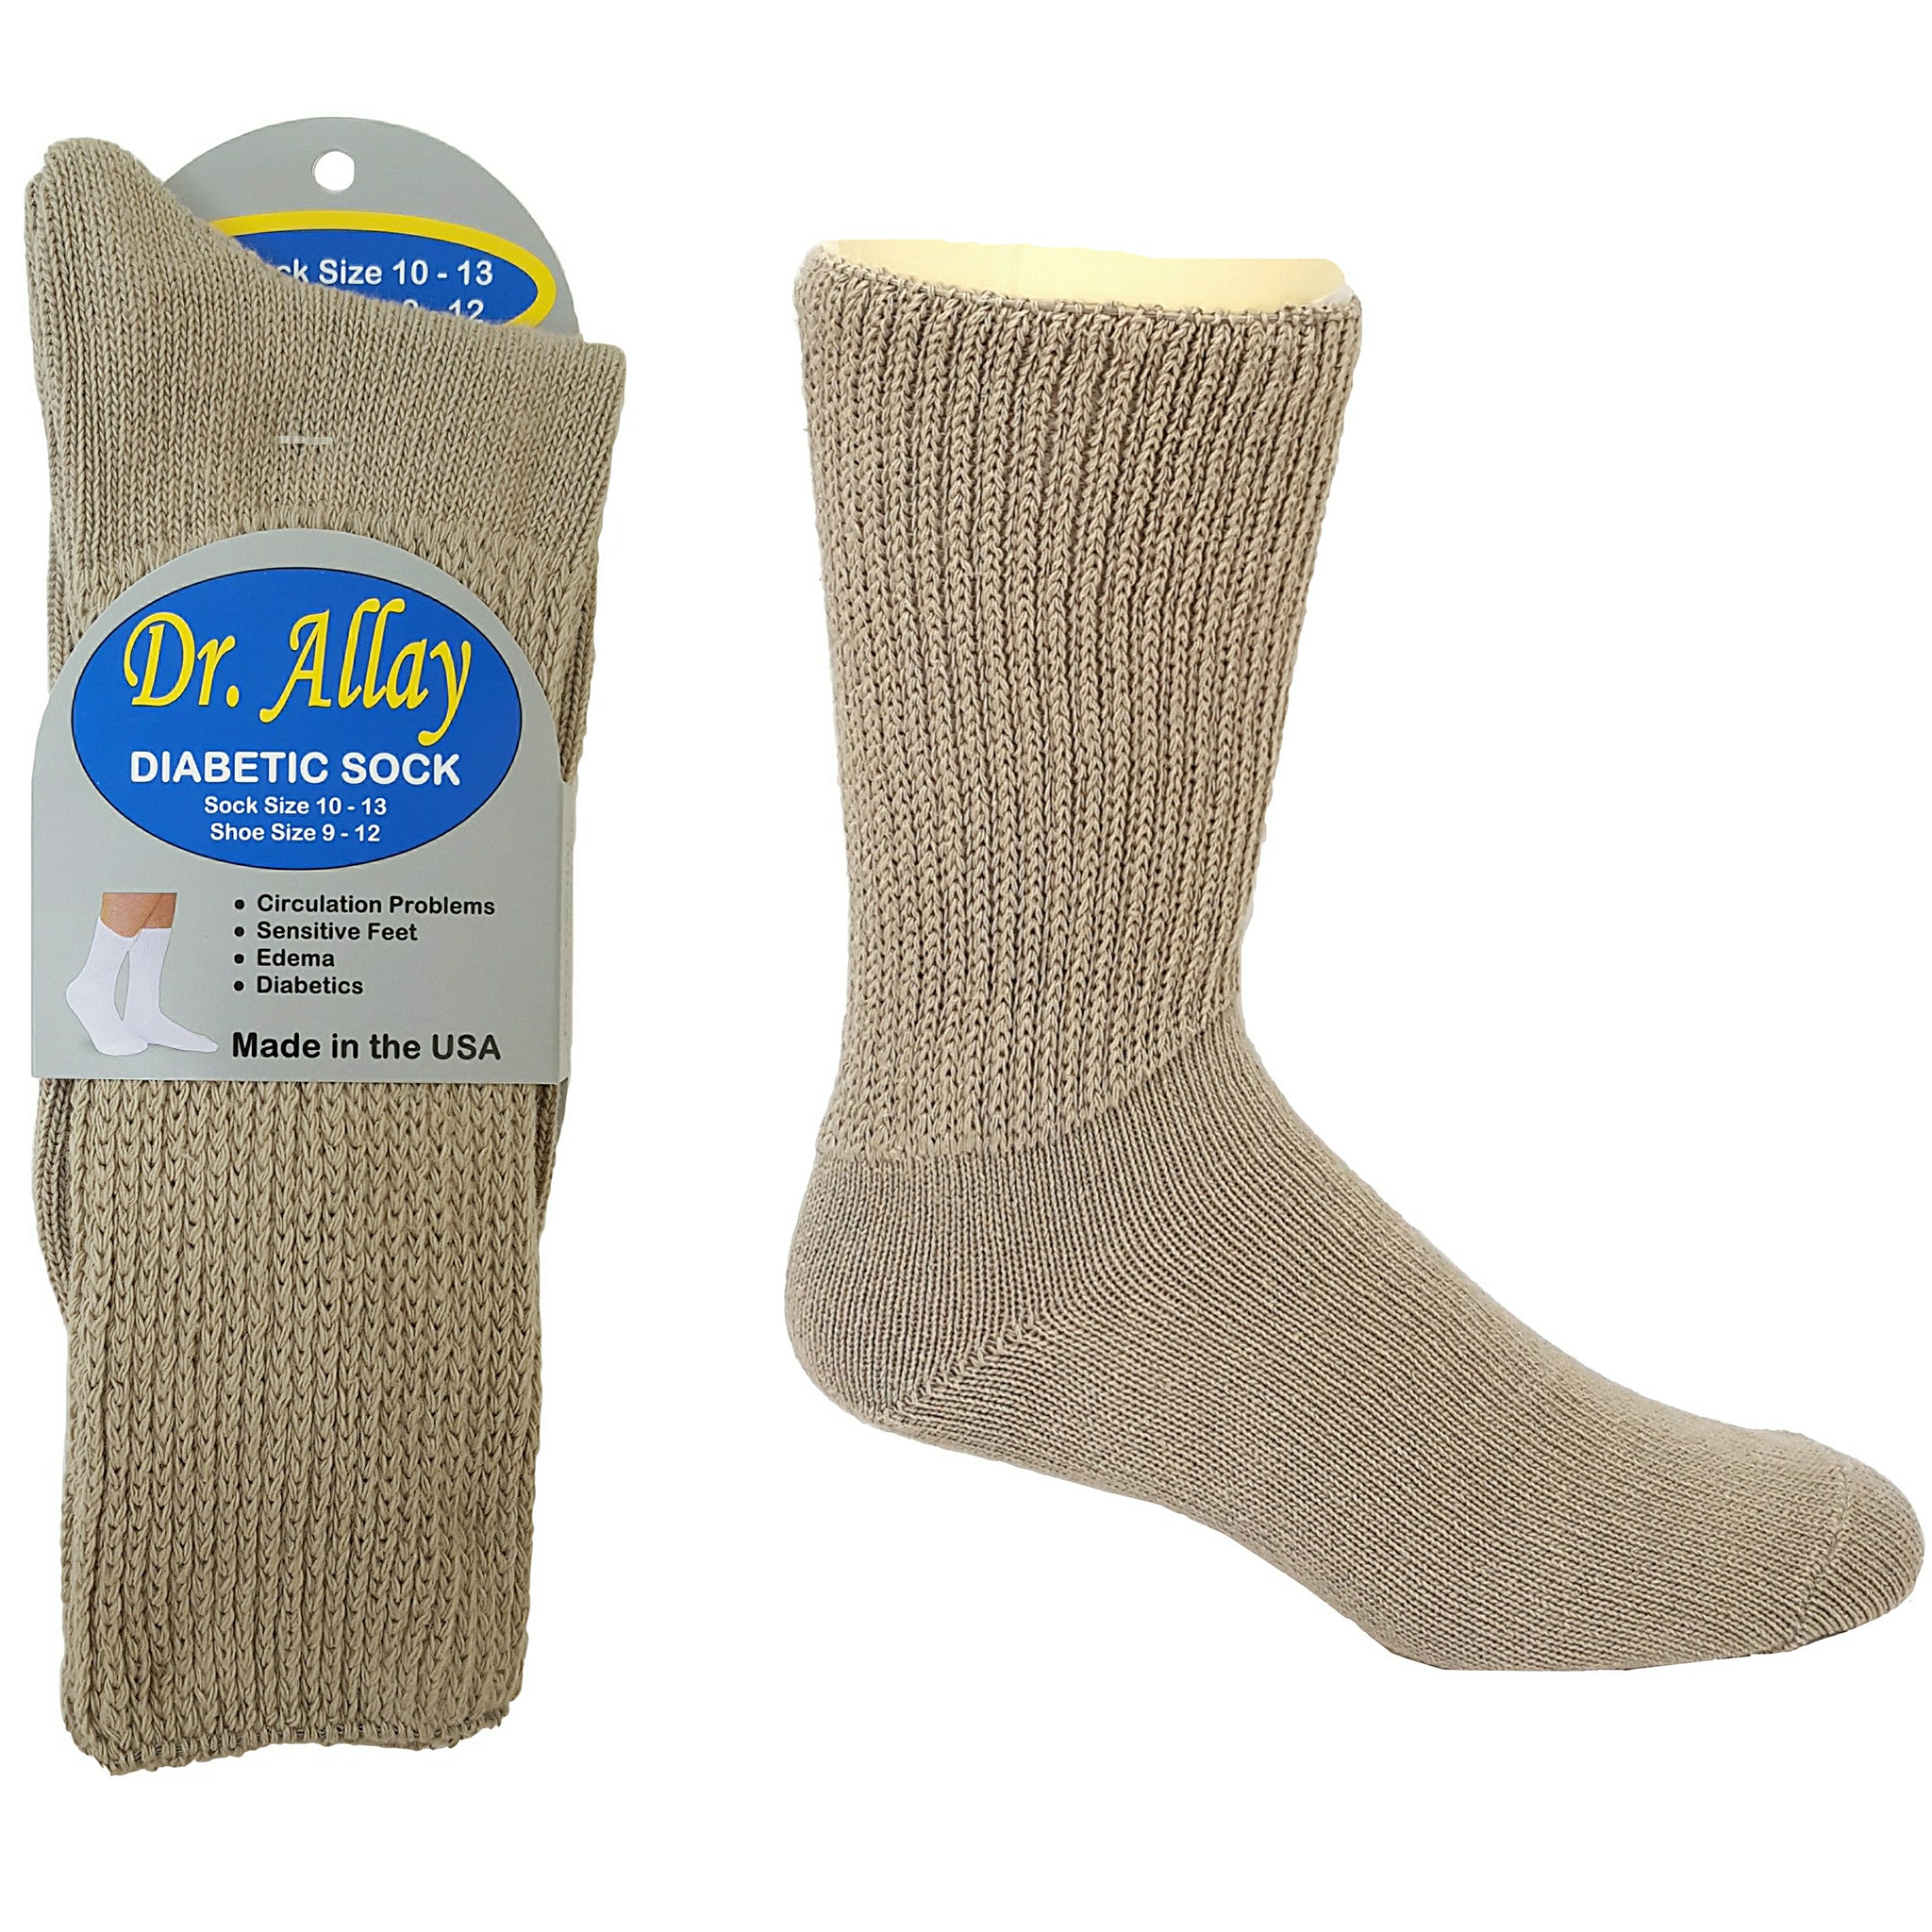 Dr. Allay Diabetic Socks – Good's Store Online